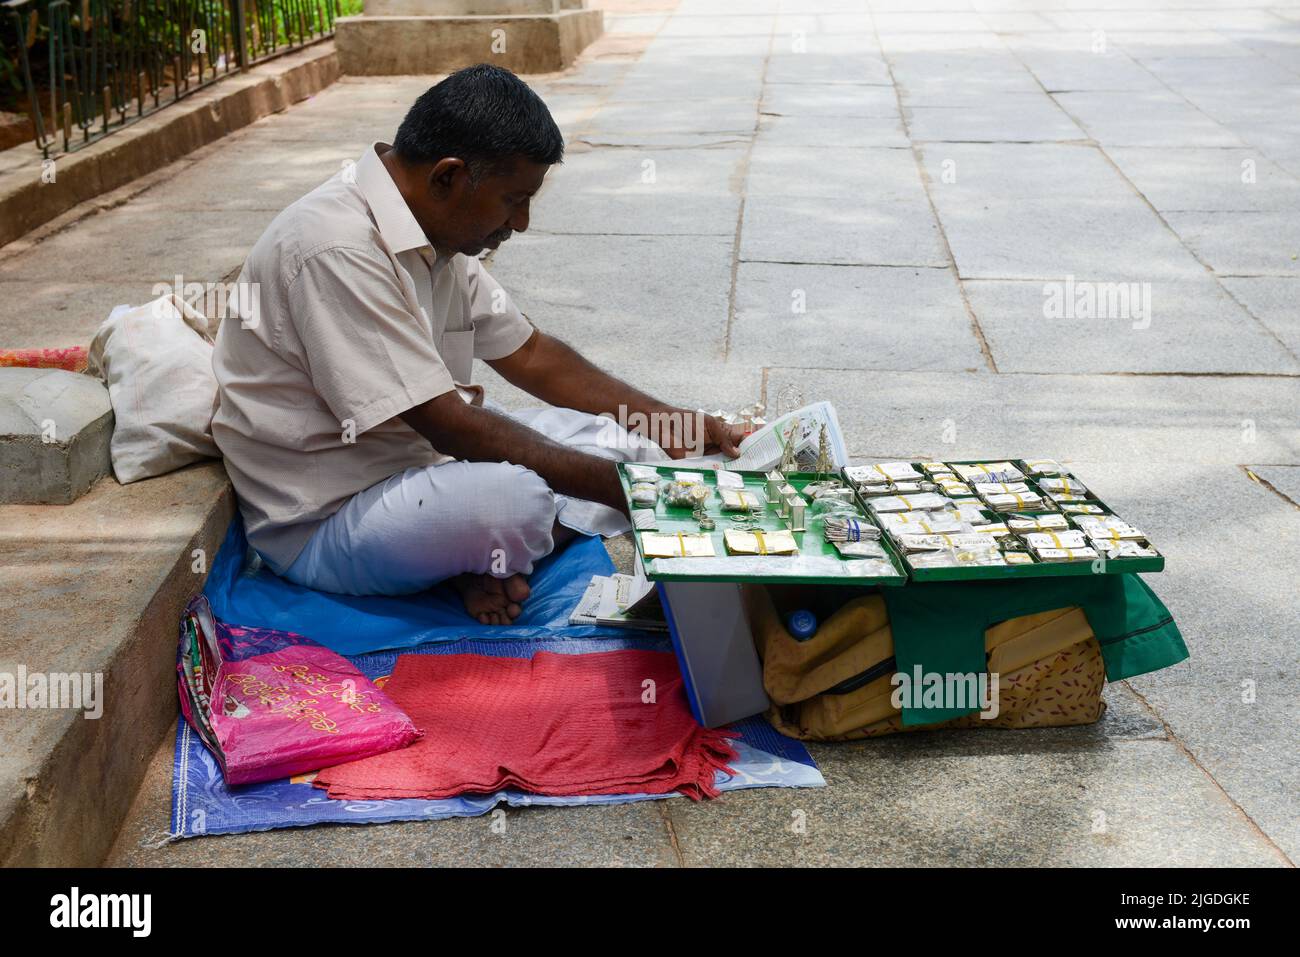 Tirupati, India - 16 settembre 2013: Un uomo indiano che vende prodotti sulla strada a Tirupati nello stato di Andhra Pradesh in India. Foto Stock